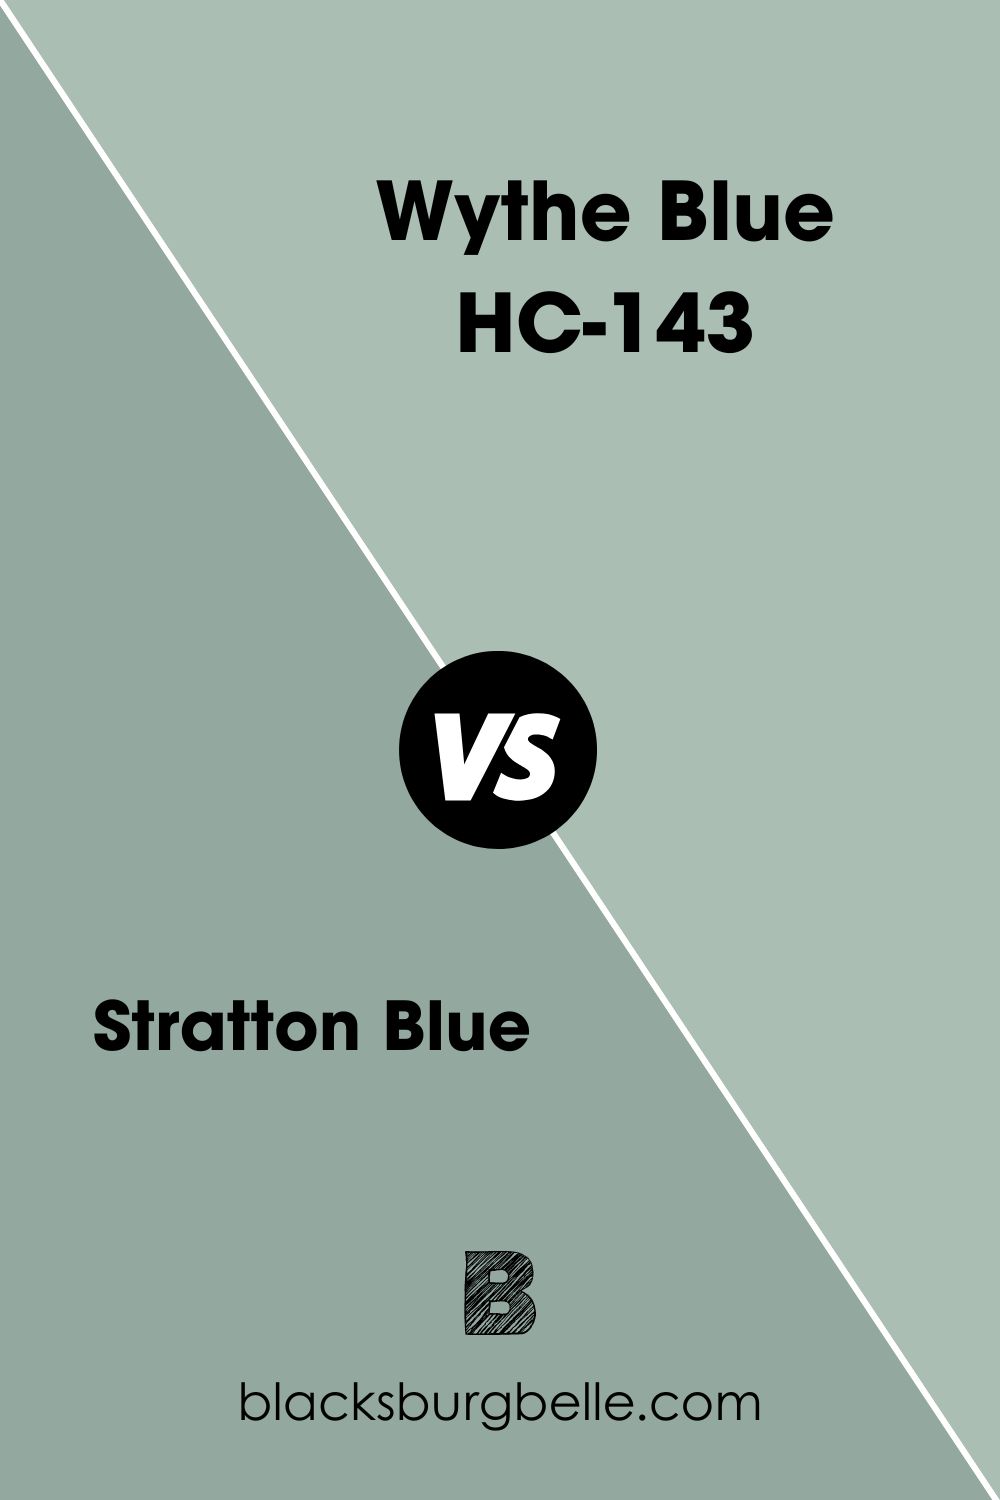 Wythe Blue HC-143 (7)